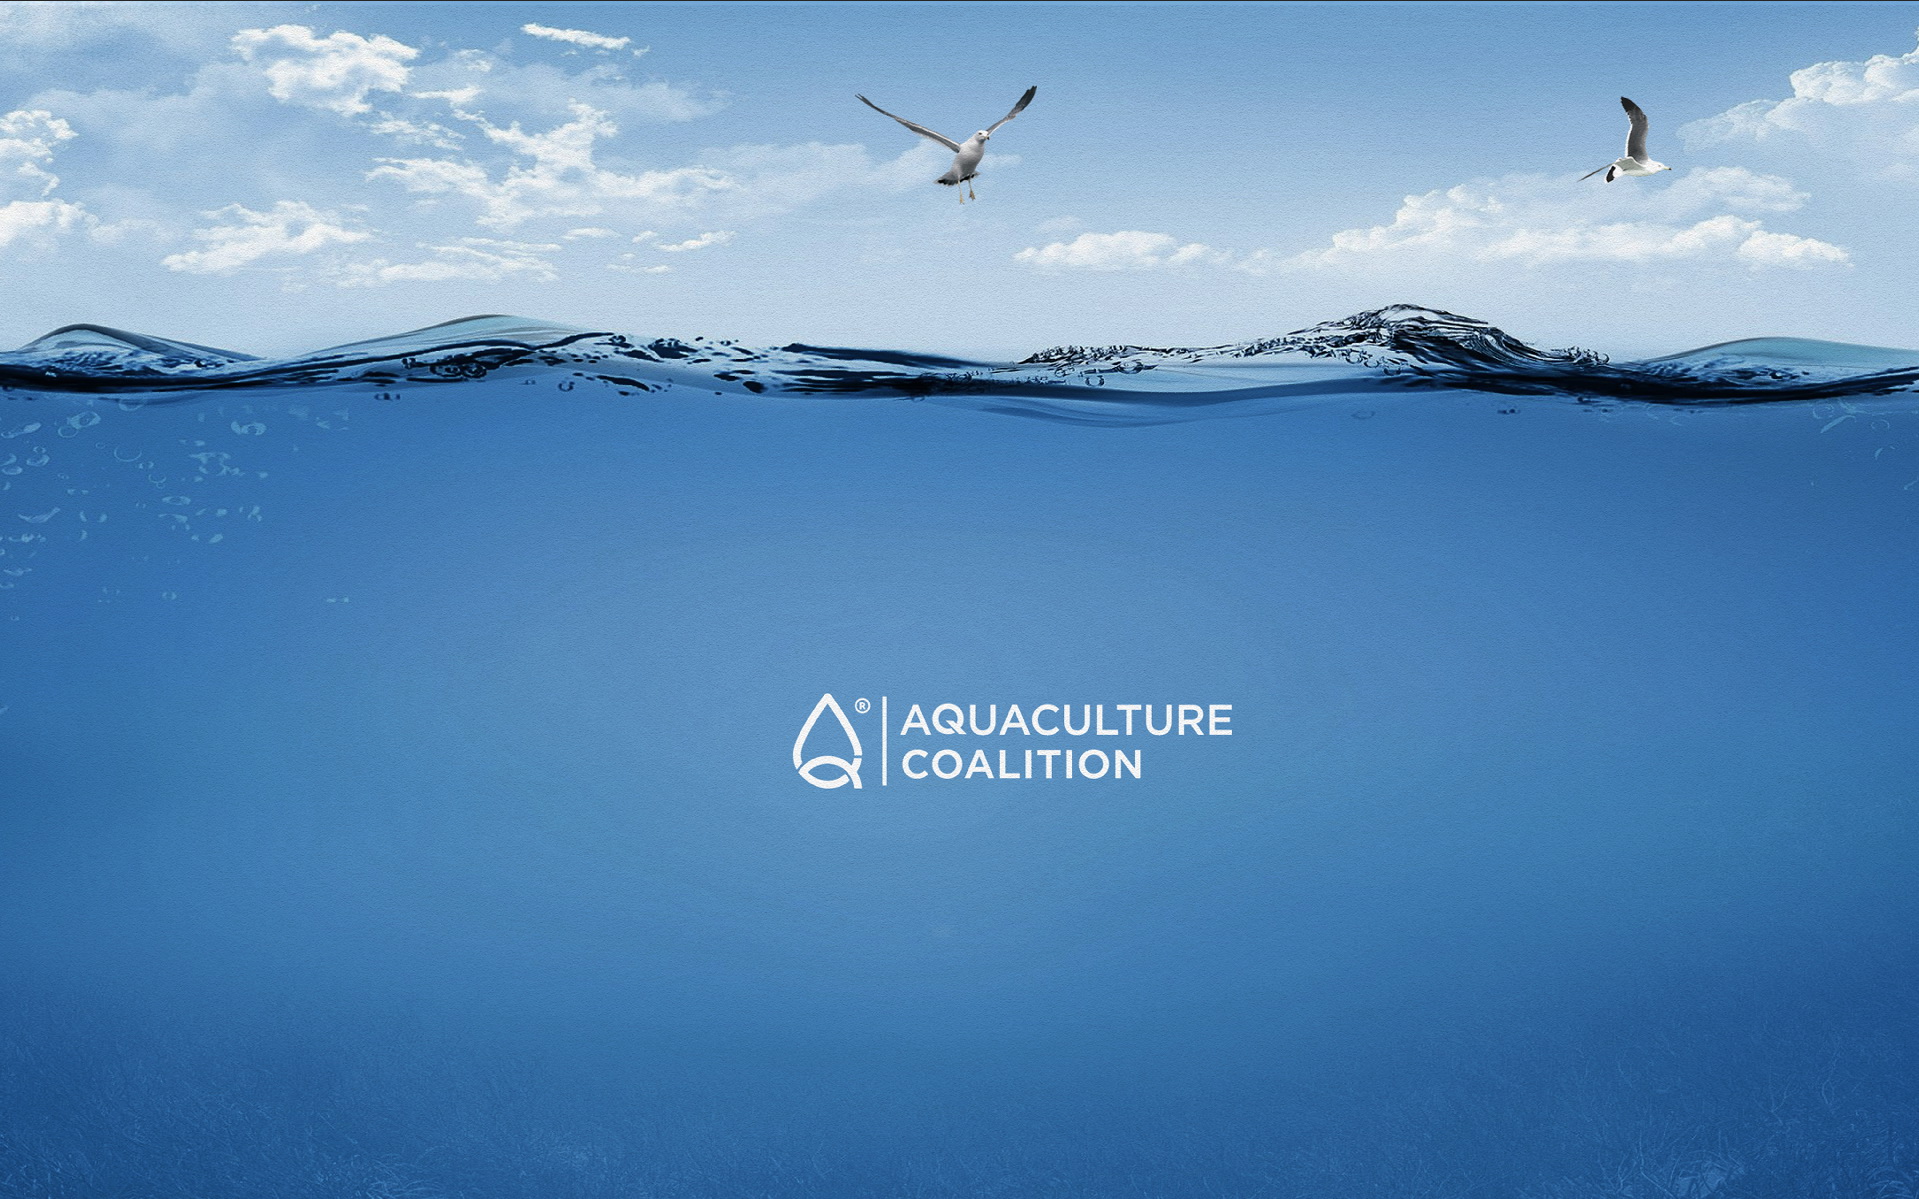 Aquaculture Coalition